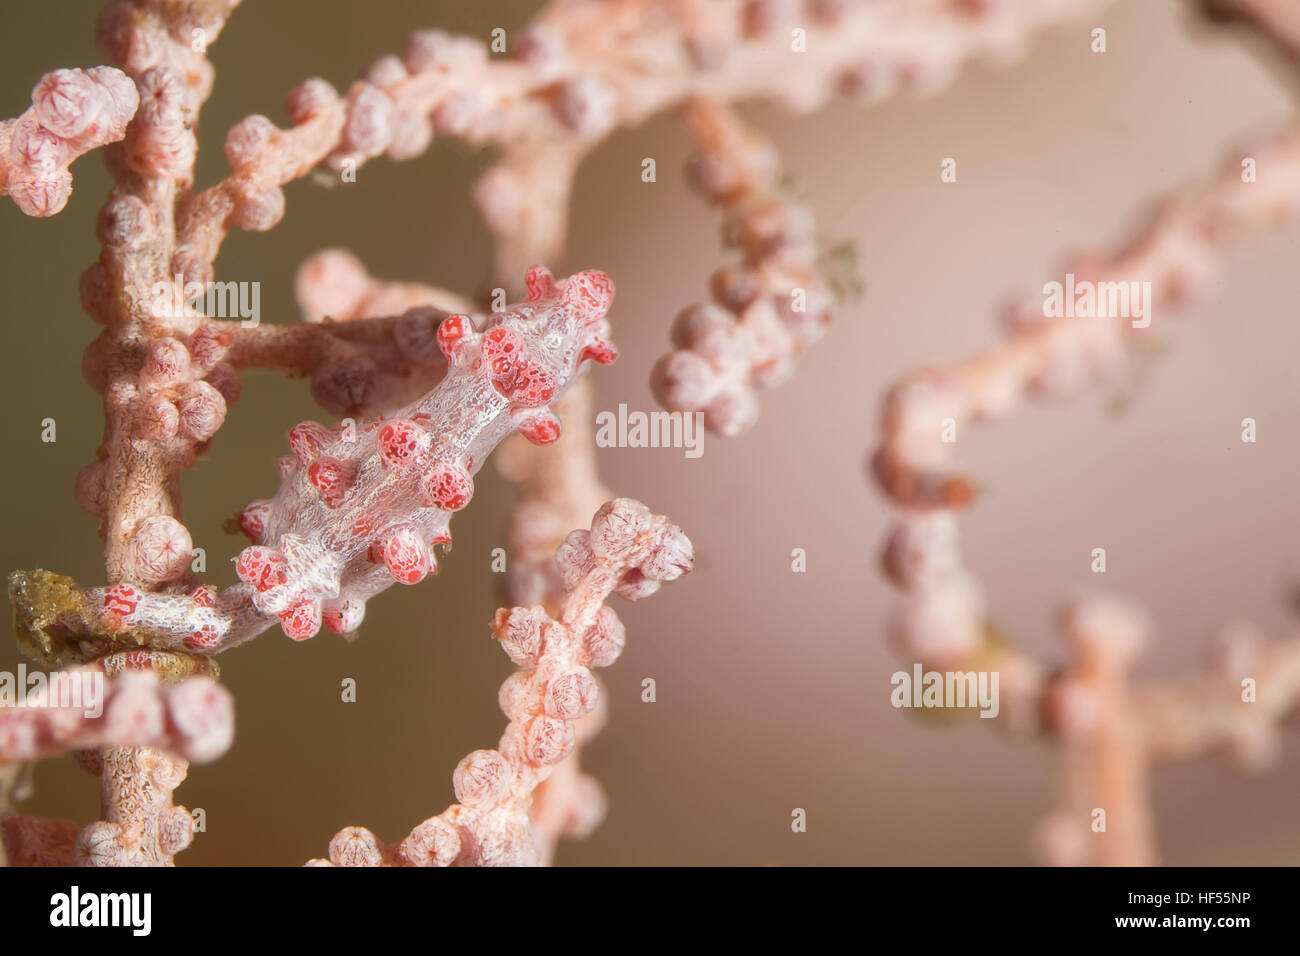 Foto subacquee di cavalluccio marino pigmeo è il comportamento di hiden e mimetizzare il corpo di coralli e abbina il loro colore e aspetto Foto Stock